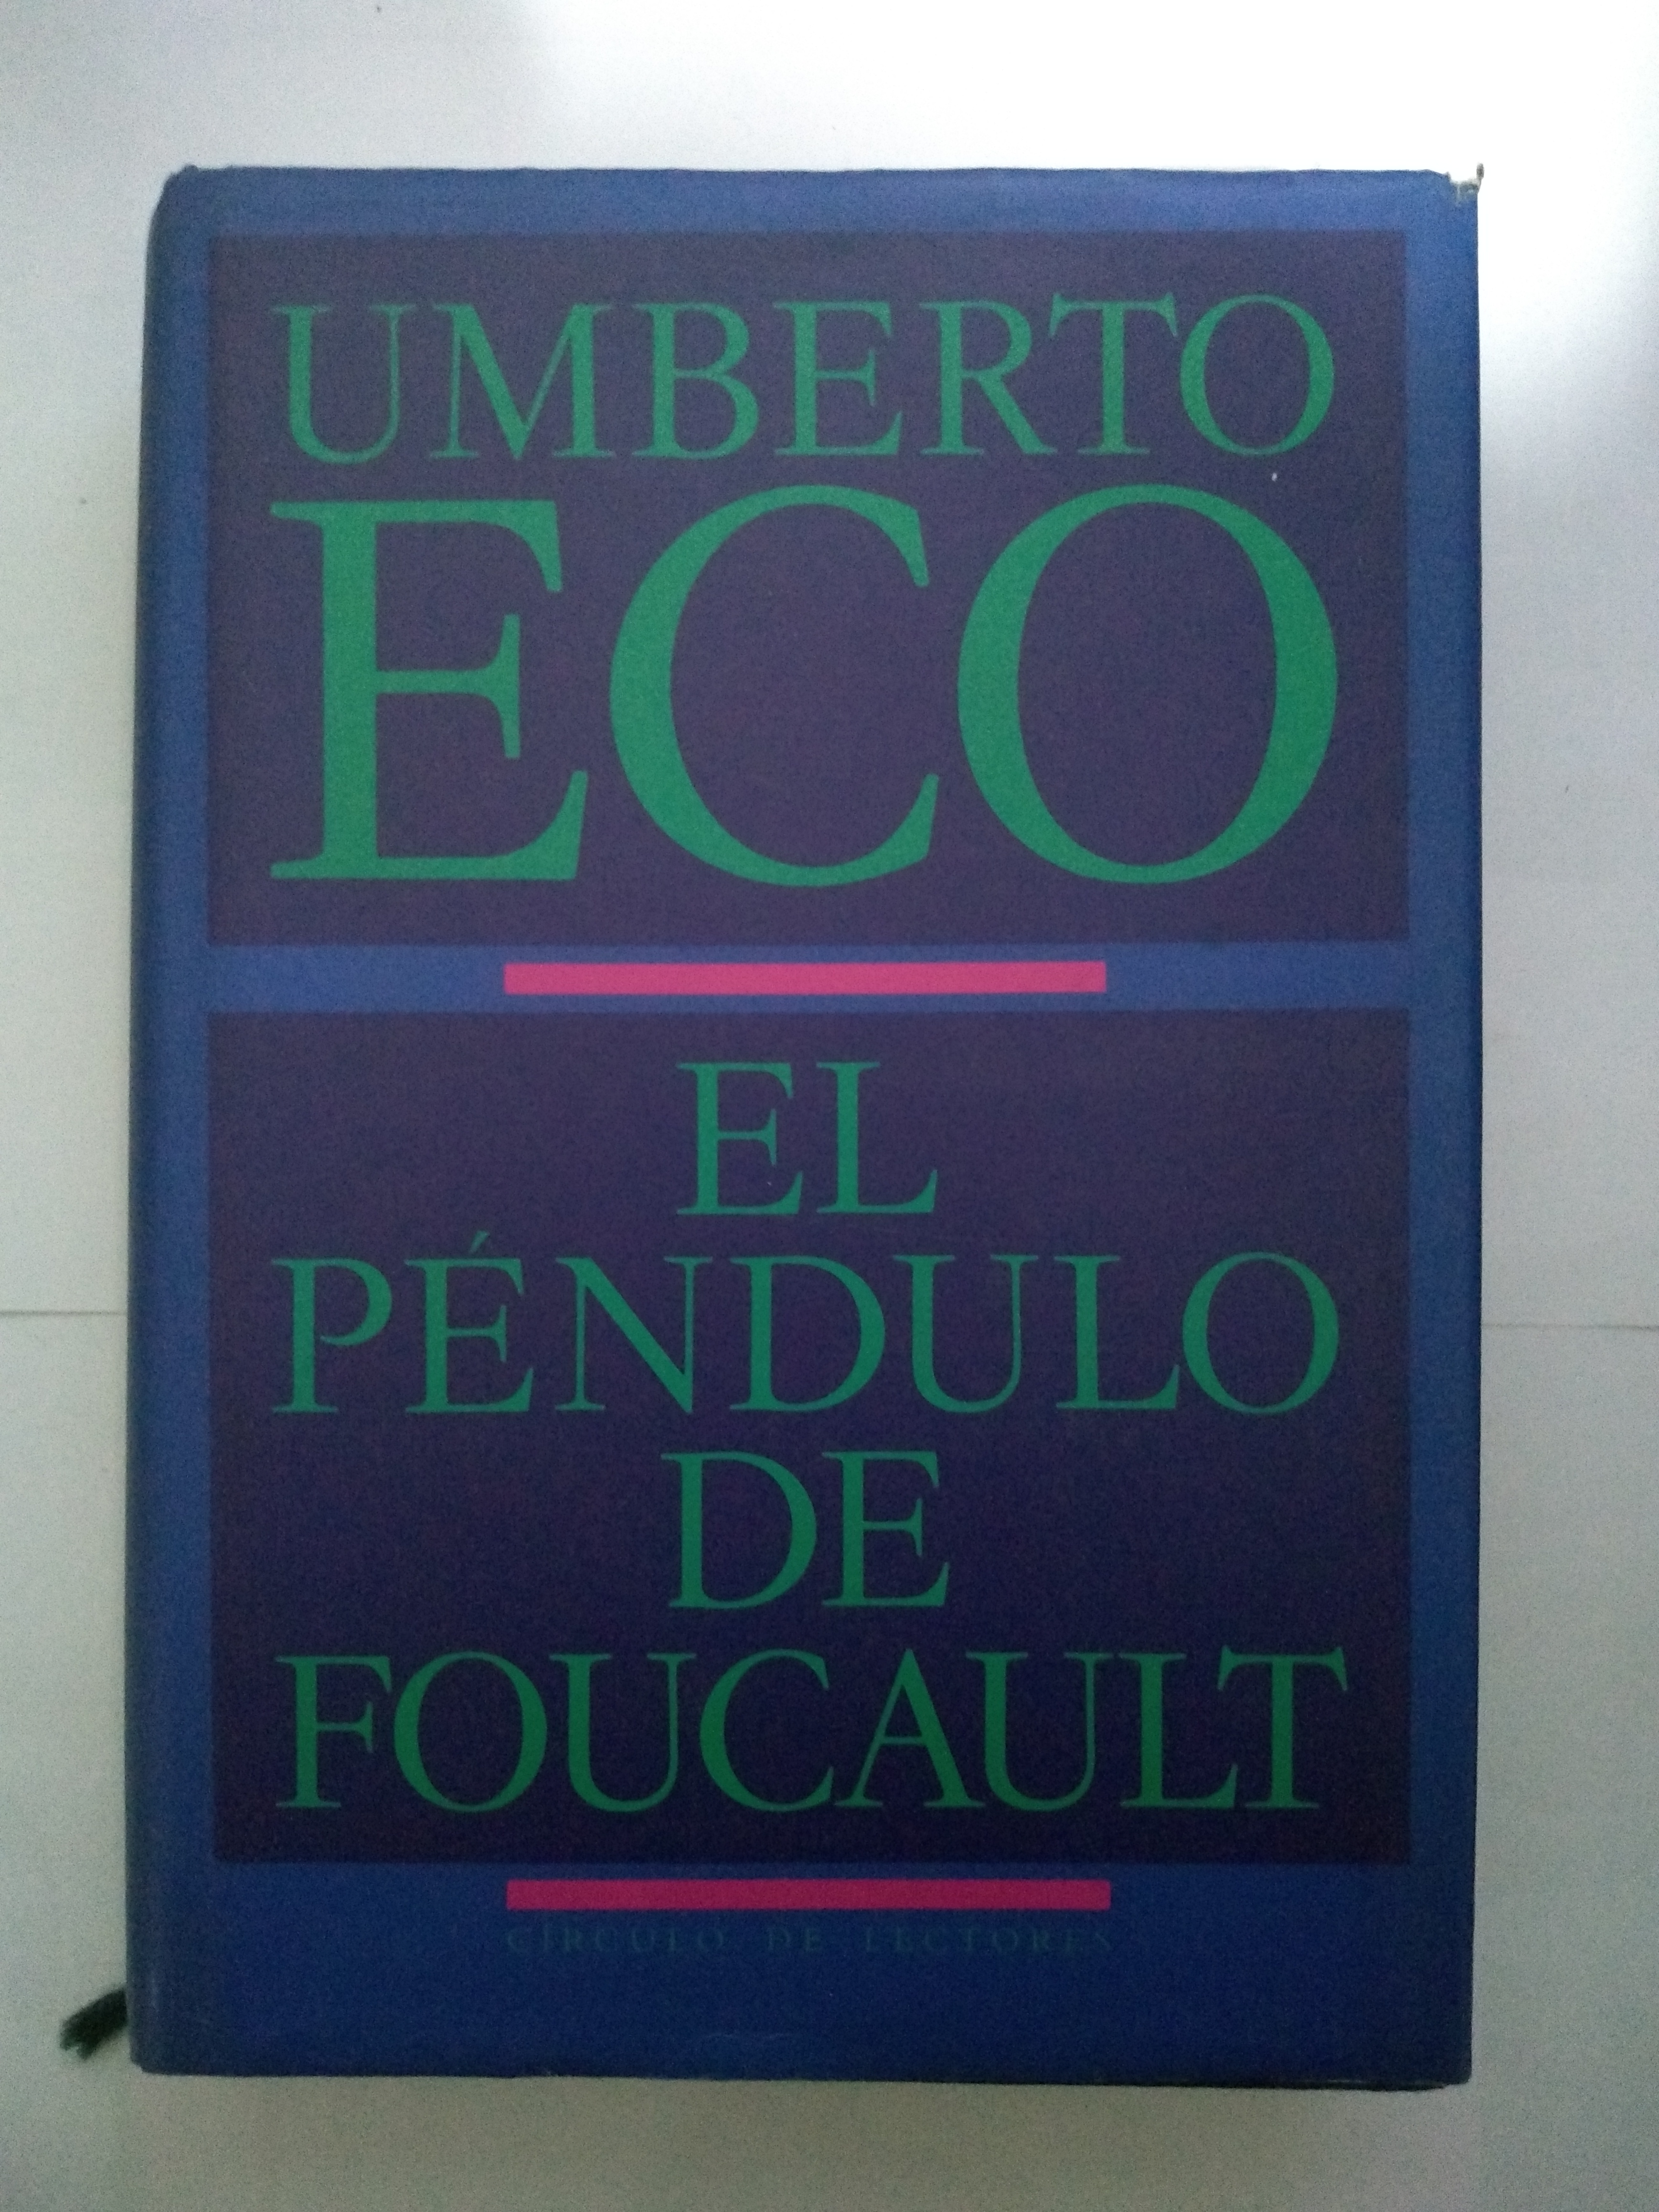 El péndulo de Foucault - Umberto Eco